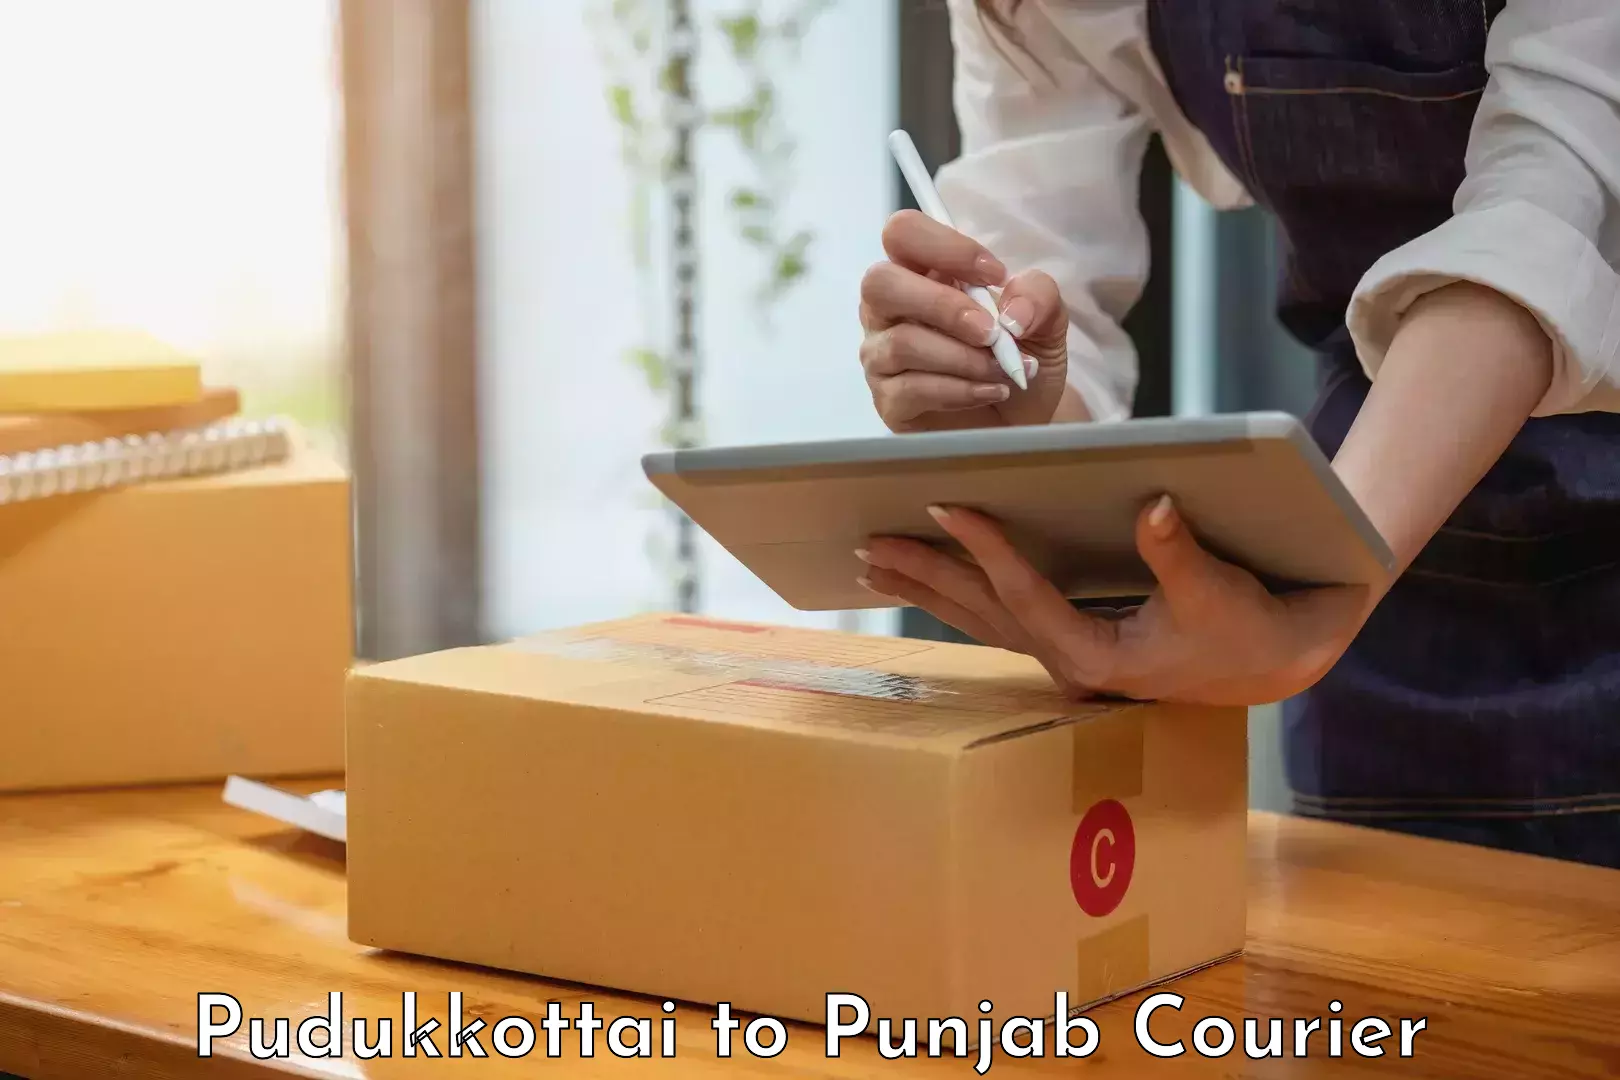 Special handling courier Pudukkottai to Punjab